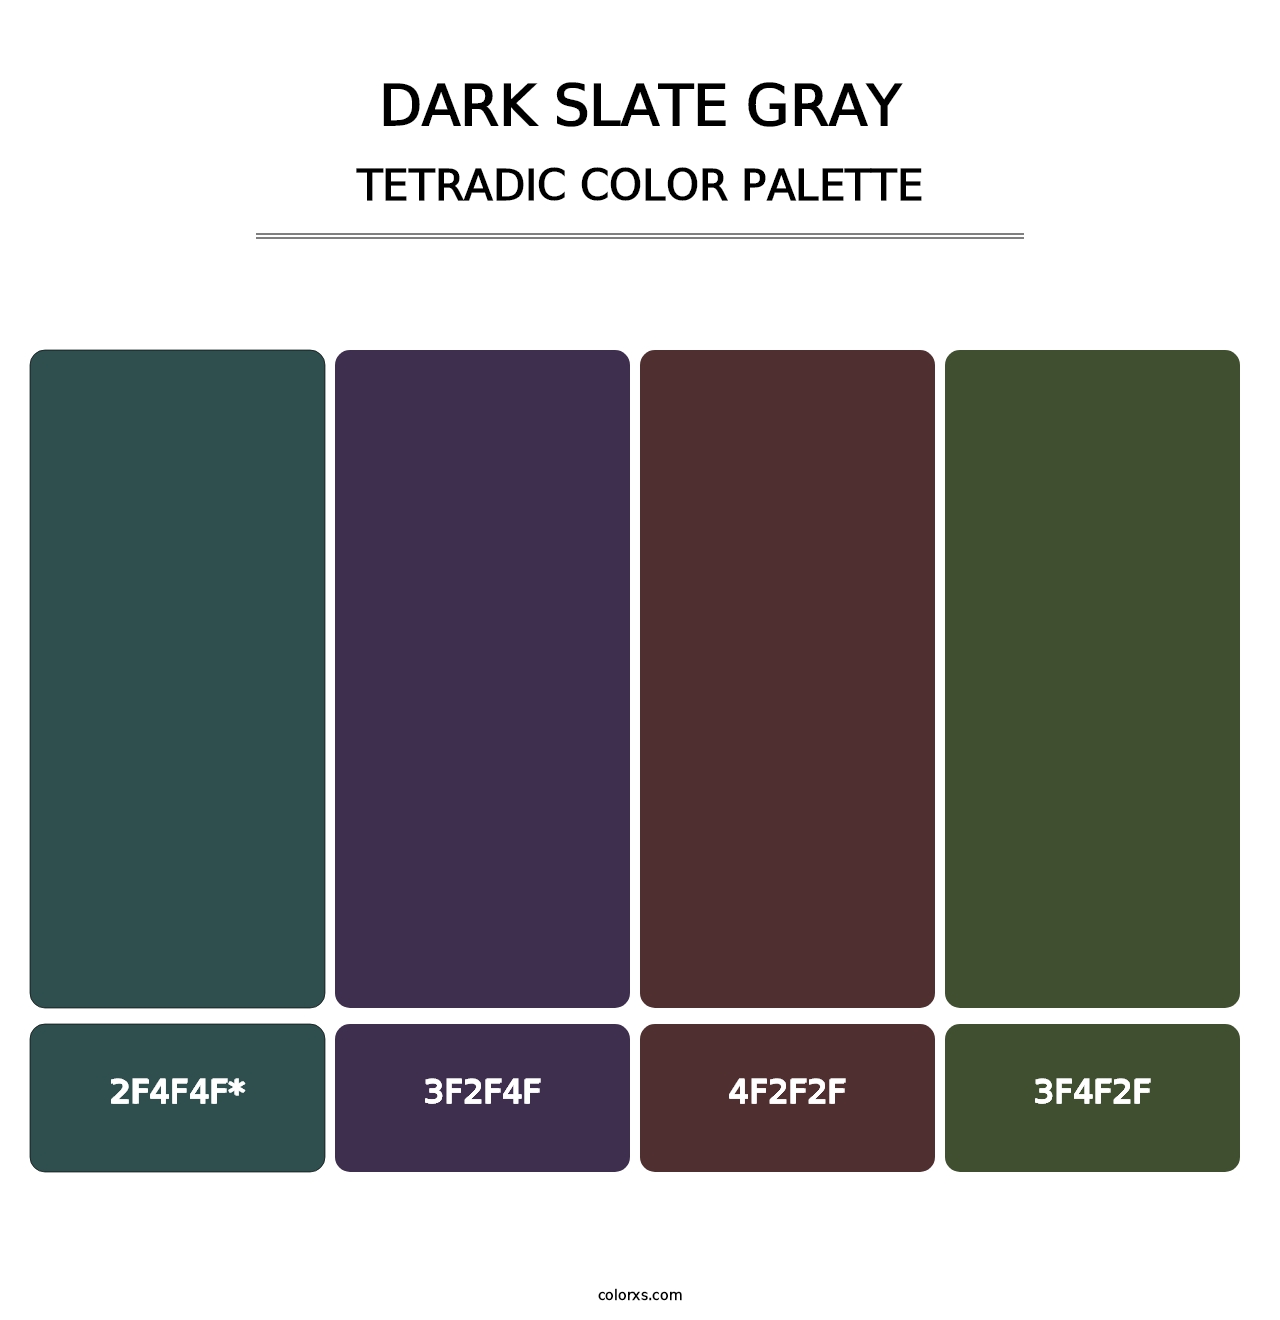 Dark Slate Gray - Tetradic Color Palette